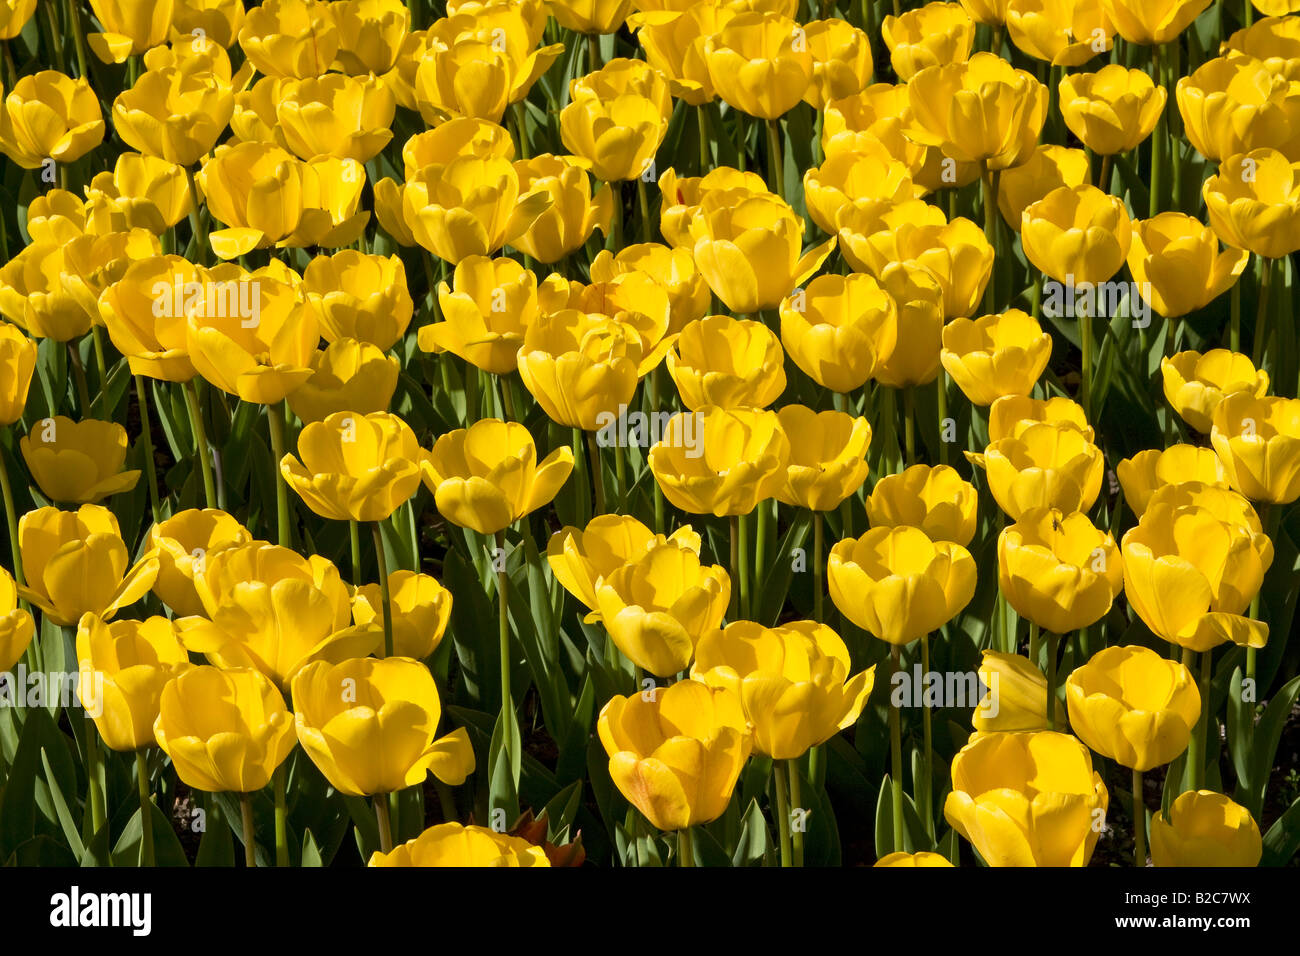 Yellow Tulips, Darwin-Hybrid-Tulips, (Tulipa cultivar), species Golden Apeldoorn Stock Photo